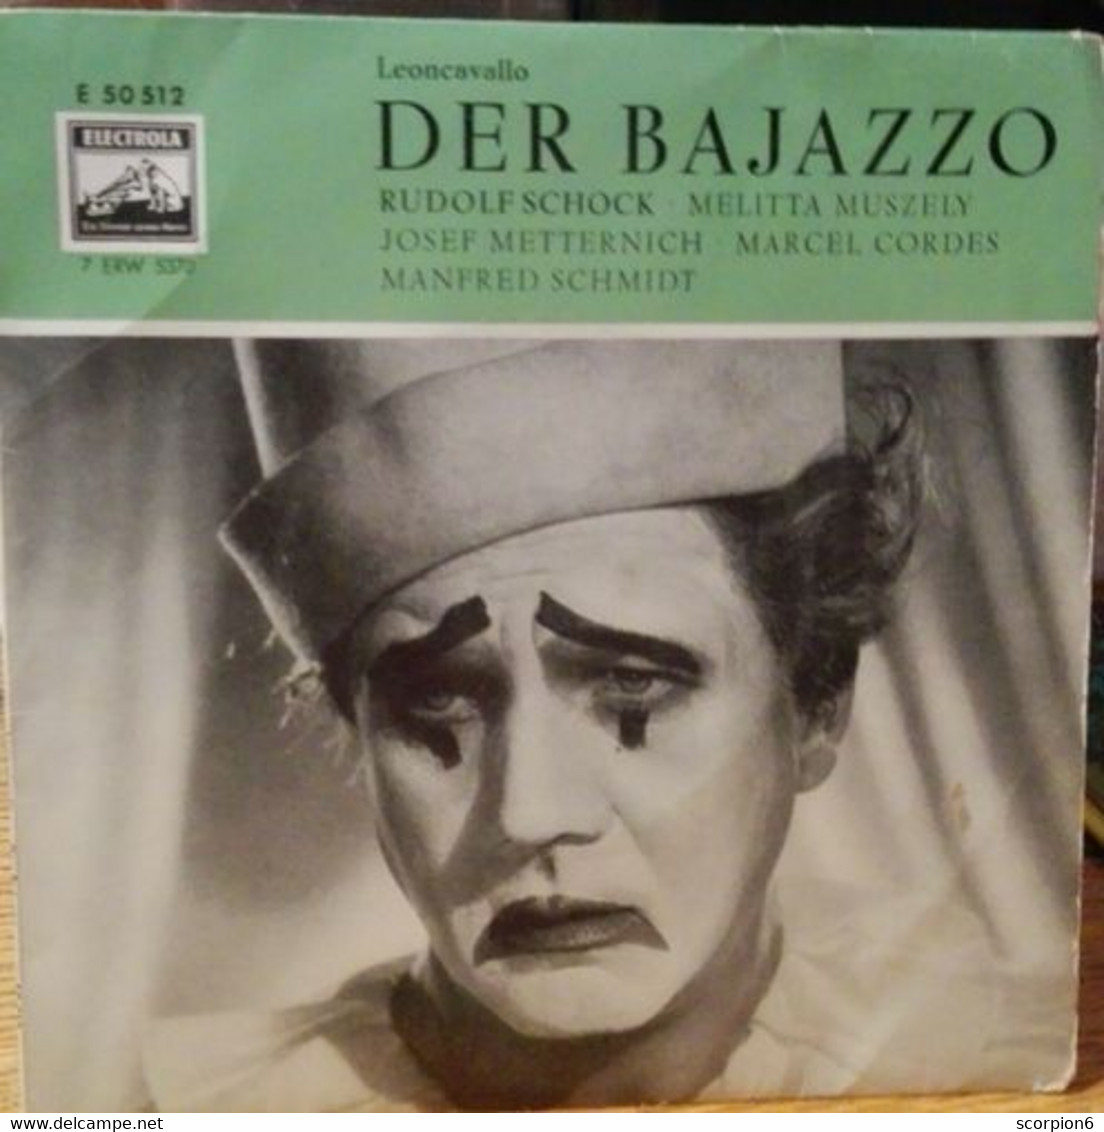 7" Single - Leoncavallo - Rudolf Schock - Der Bajazzo - Clásica